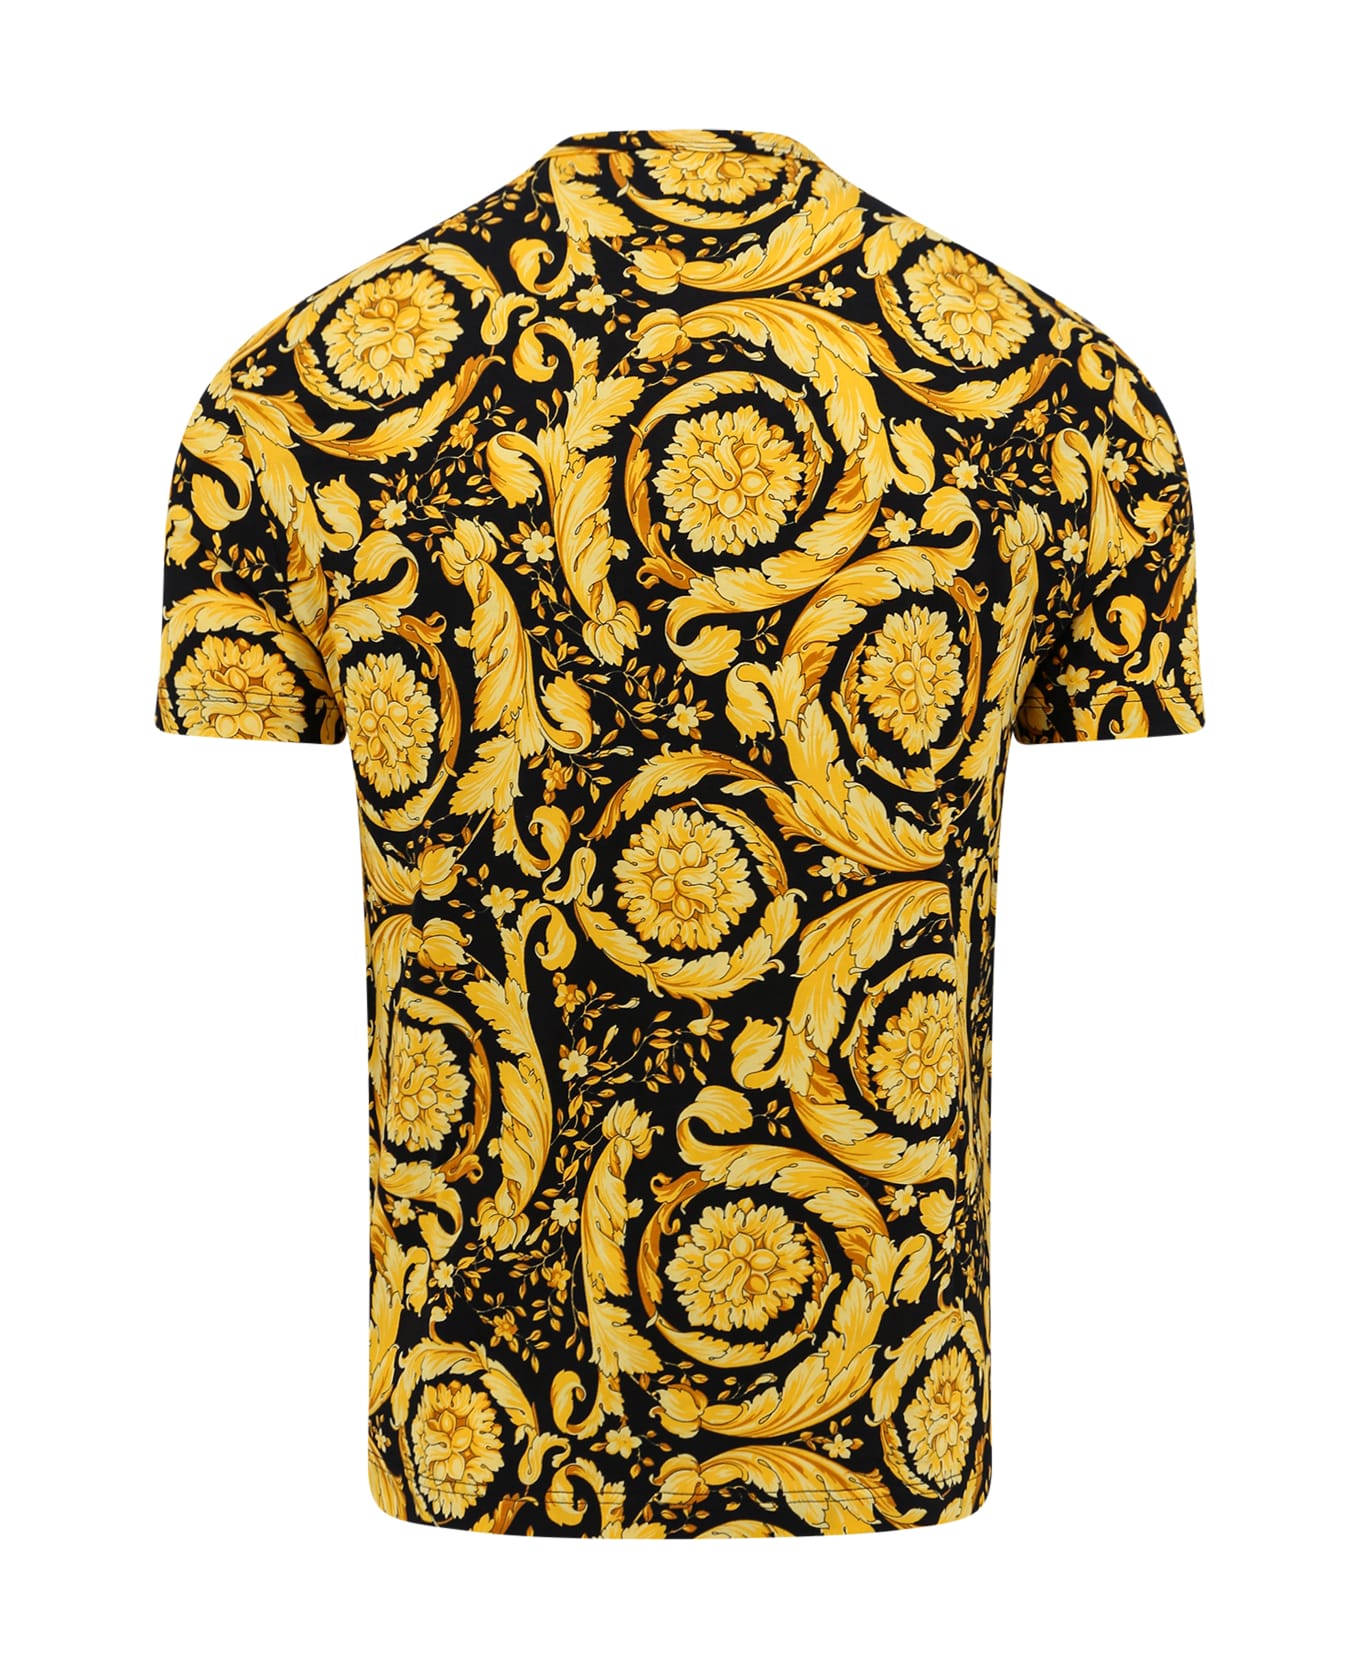 Versace T-shirt - Golden